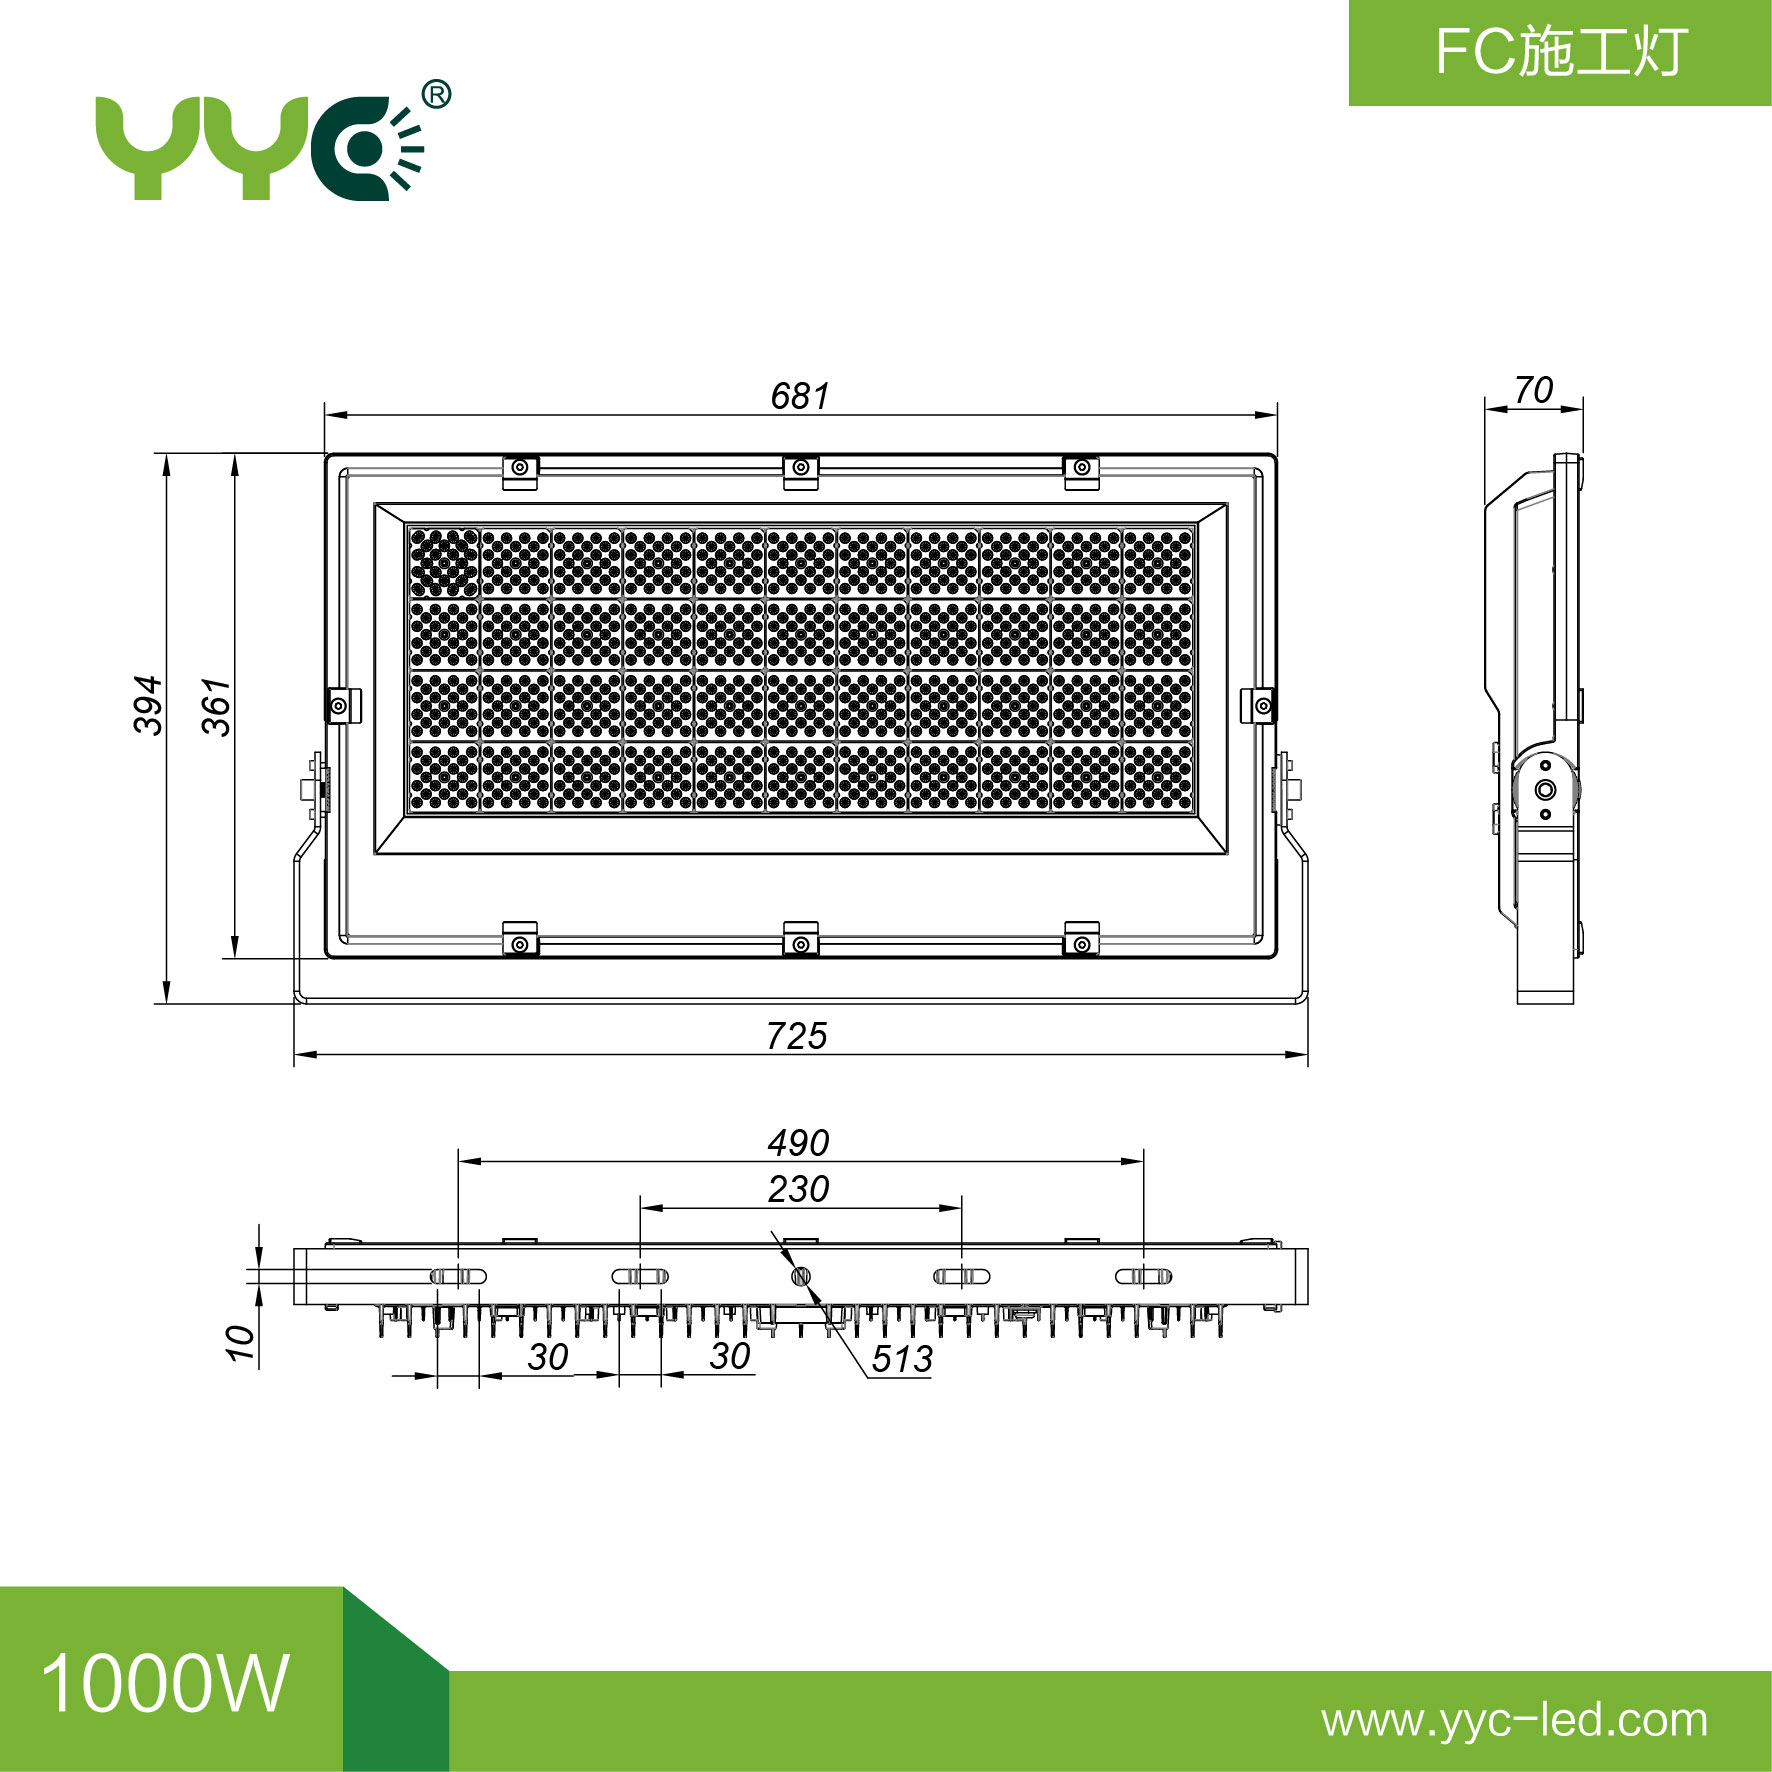 FC103-1000W